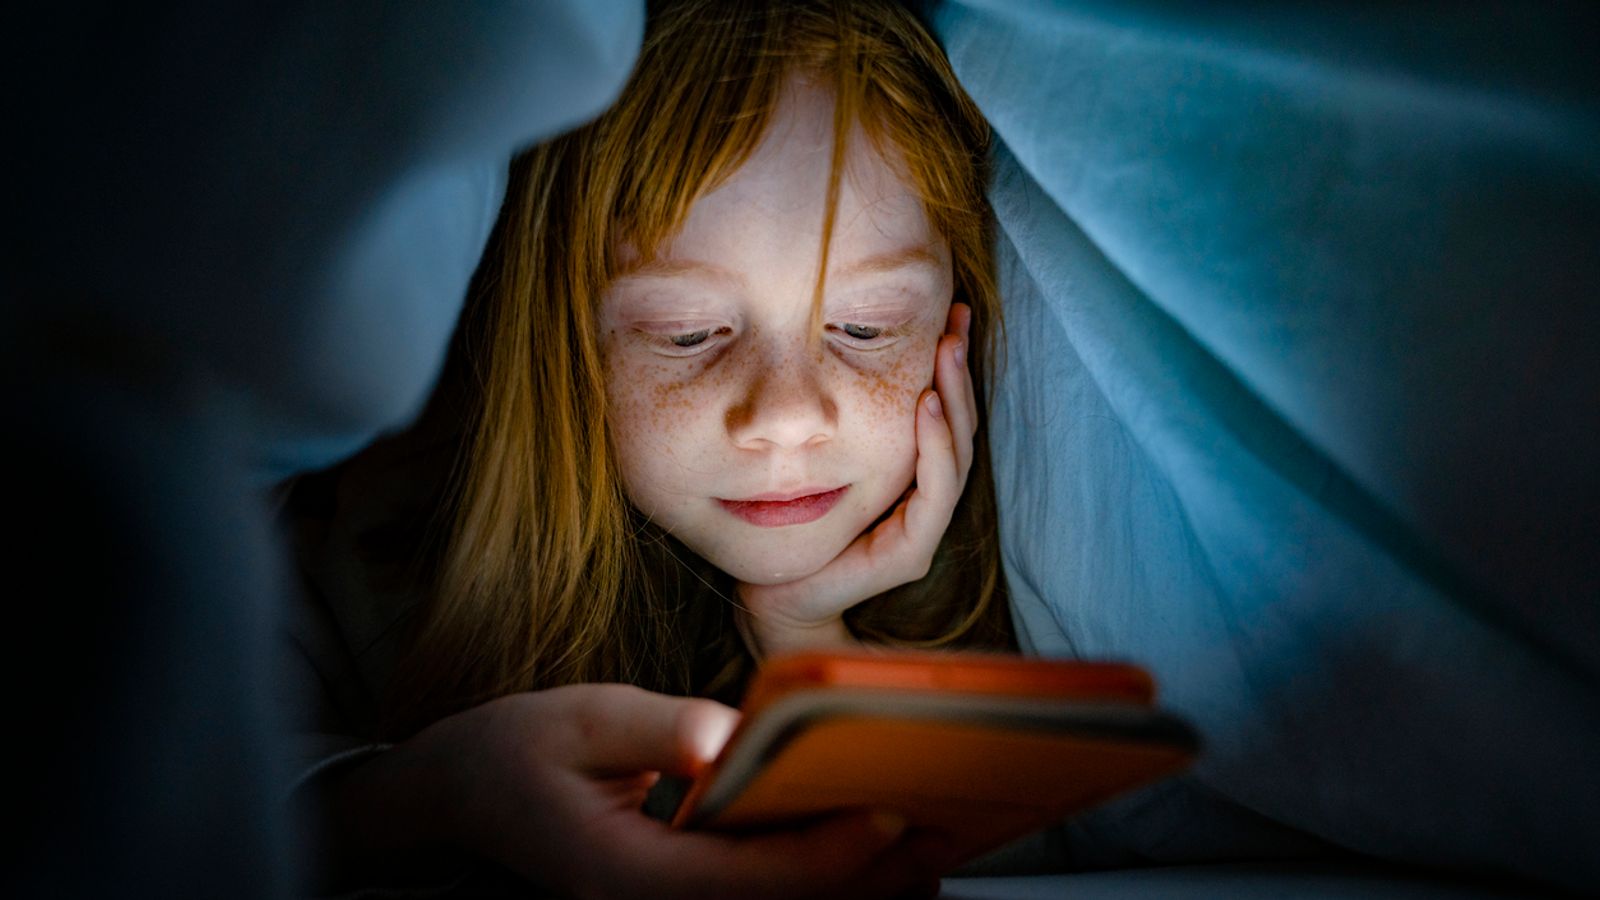 Le « split-screening » et d’autres habitudes téléphoniques révèlent que les enfants regardent encore plus de vidéos |  Actualités scientifiques et techniques